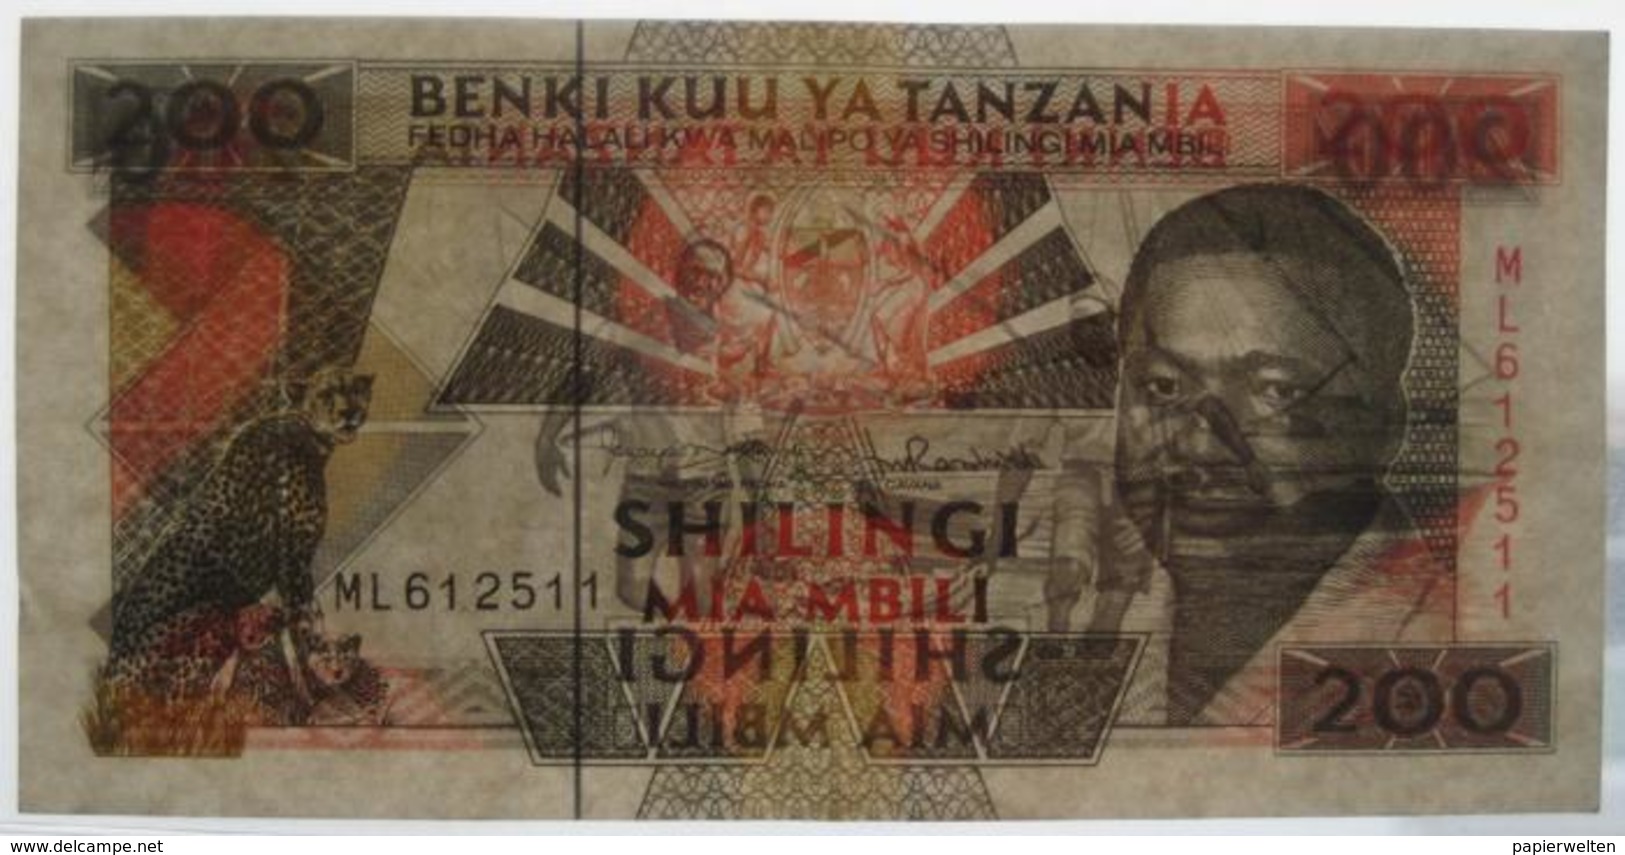 200 / Mia Mbili Shilingi ND (WPM 25b) - Tanzanie